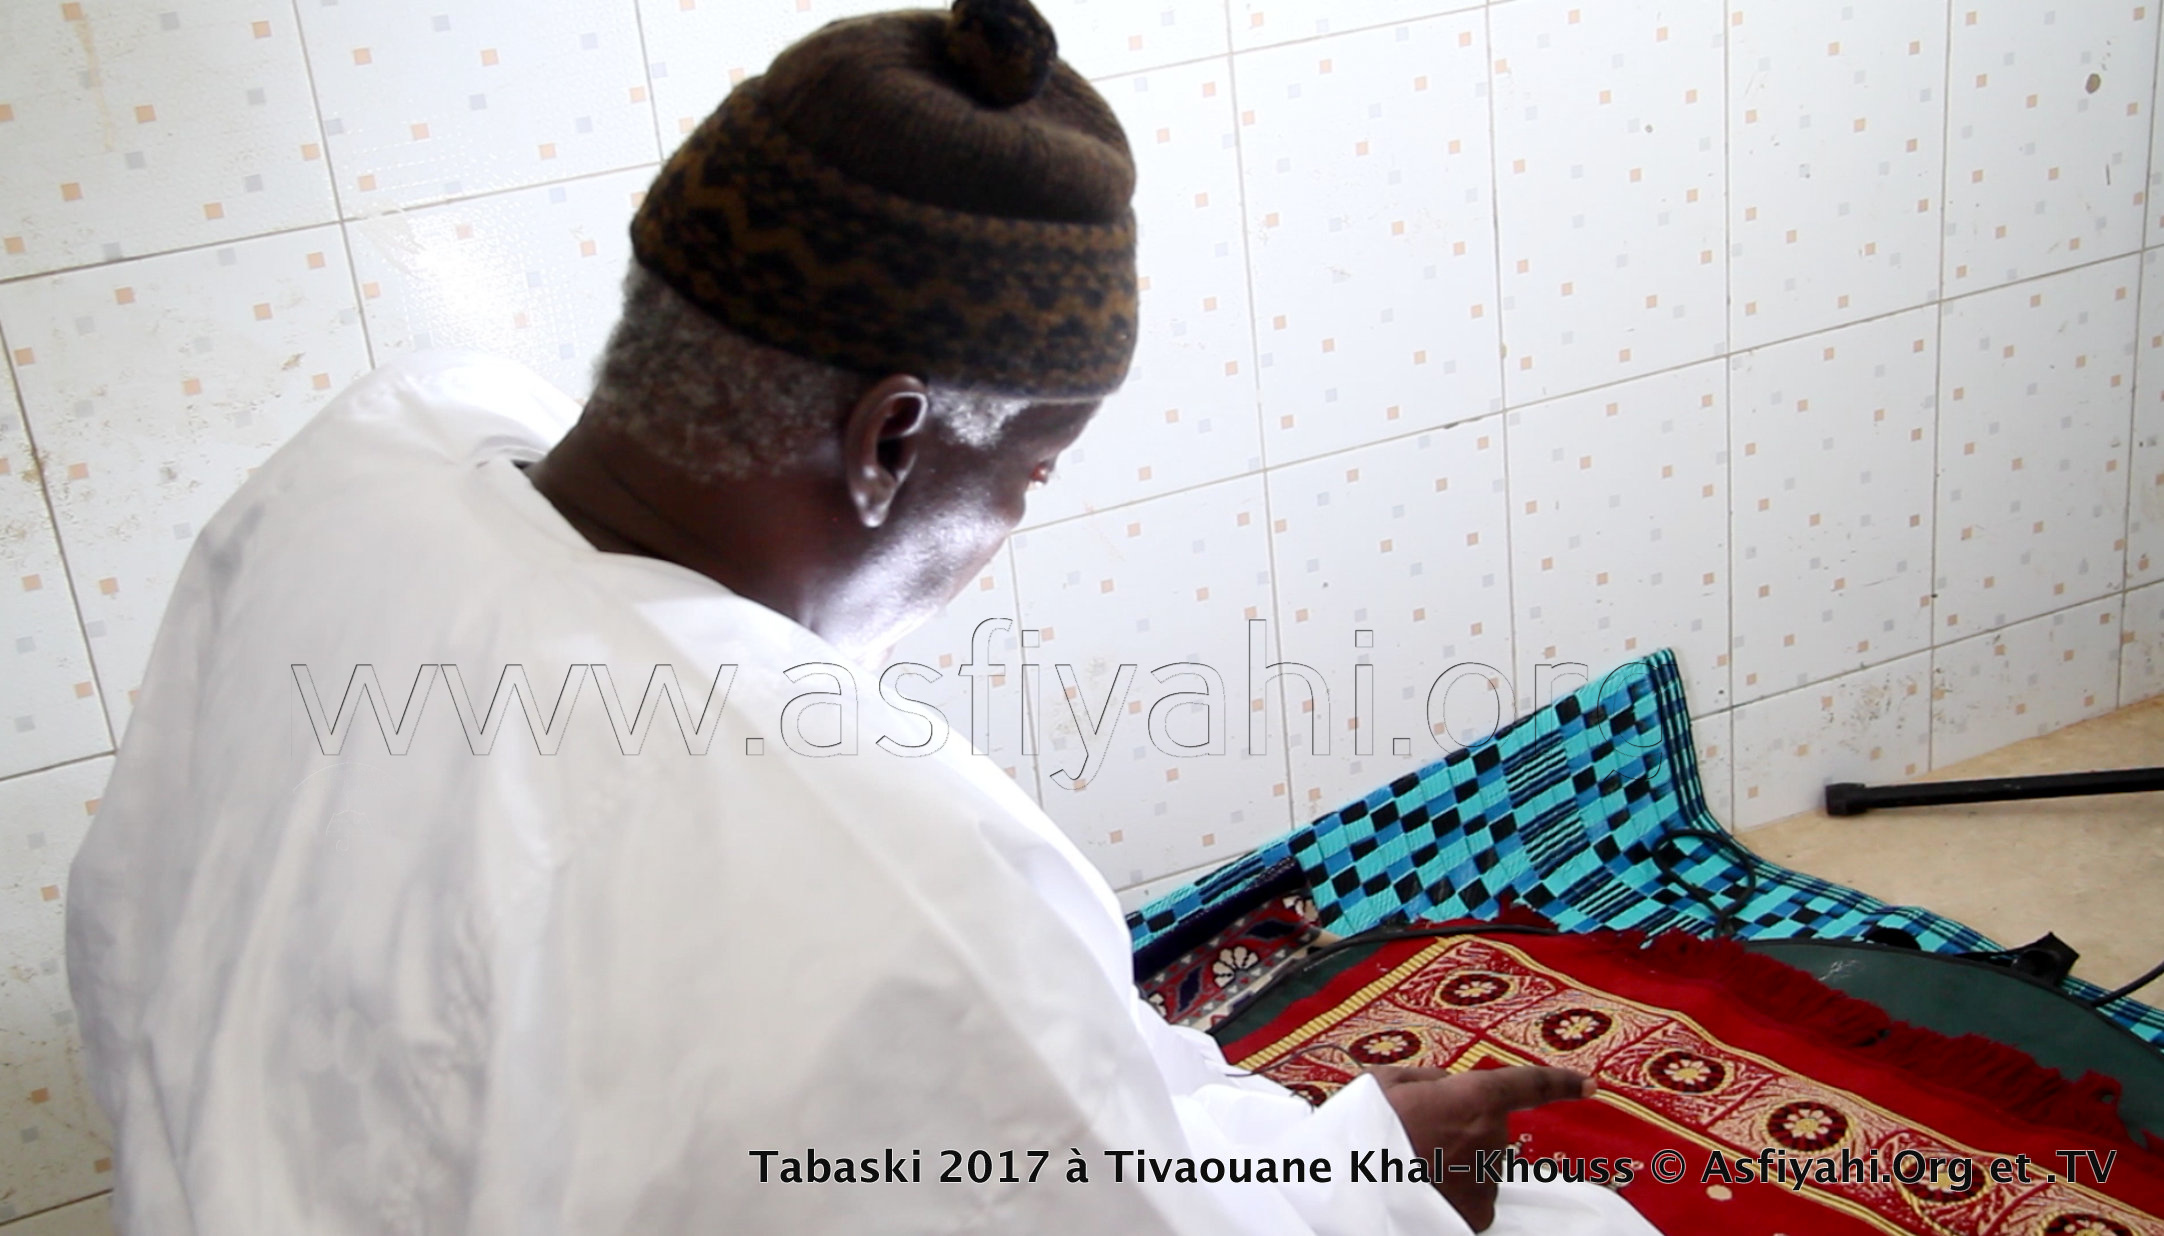 PHOTOS - TABASKI 2017 À TIVAOUANE - Les images de la Prière à Khal-Khouss